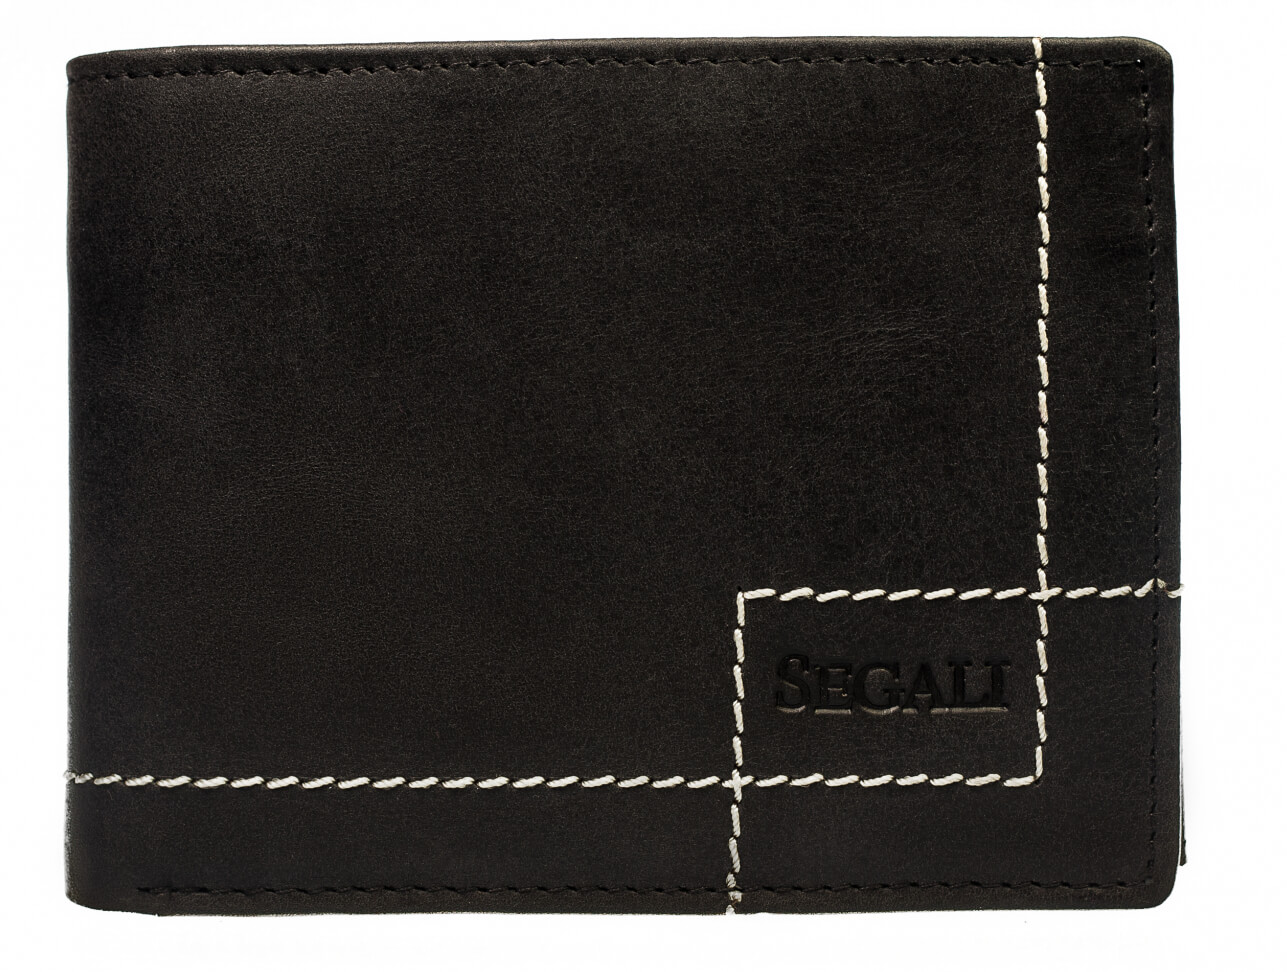 SEGALI Pánska kožená peňaženka 02 black